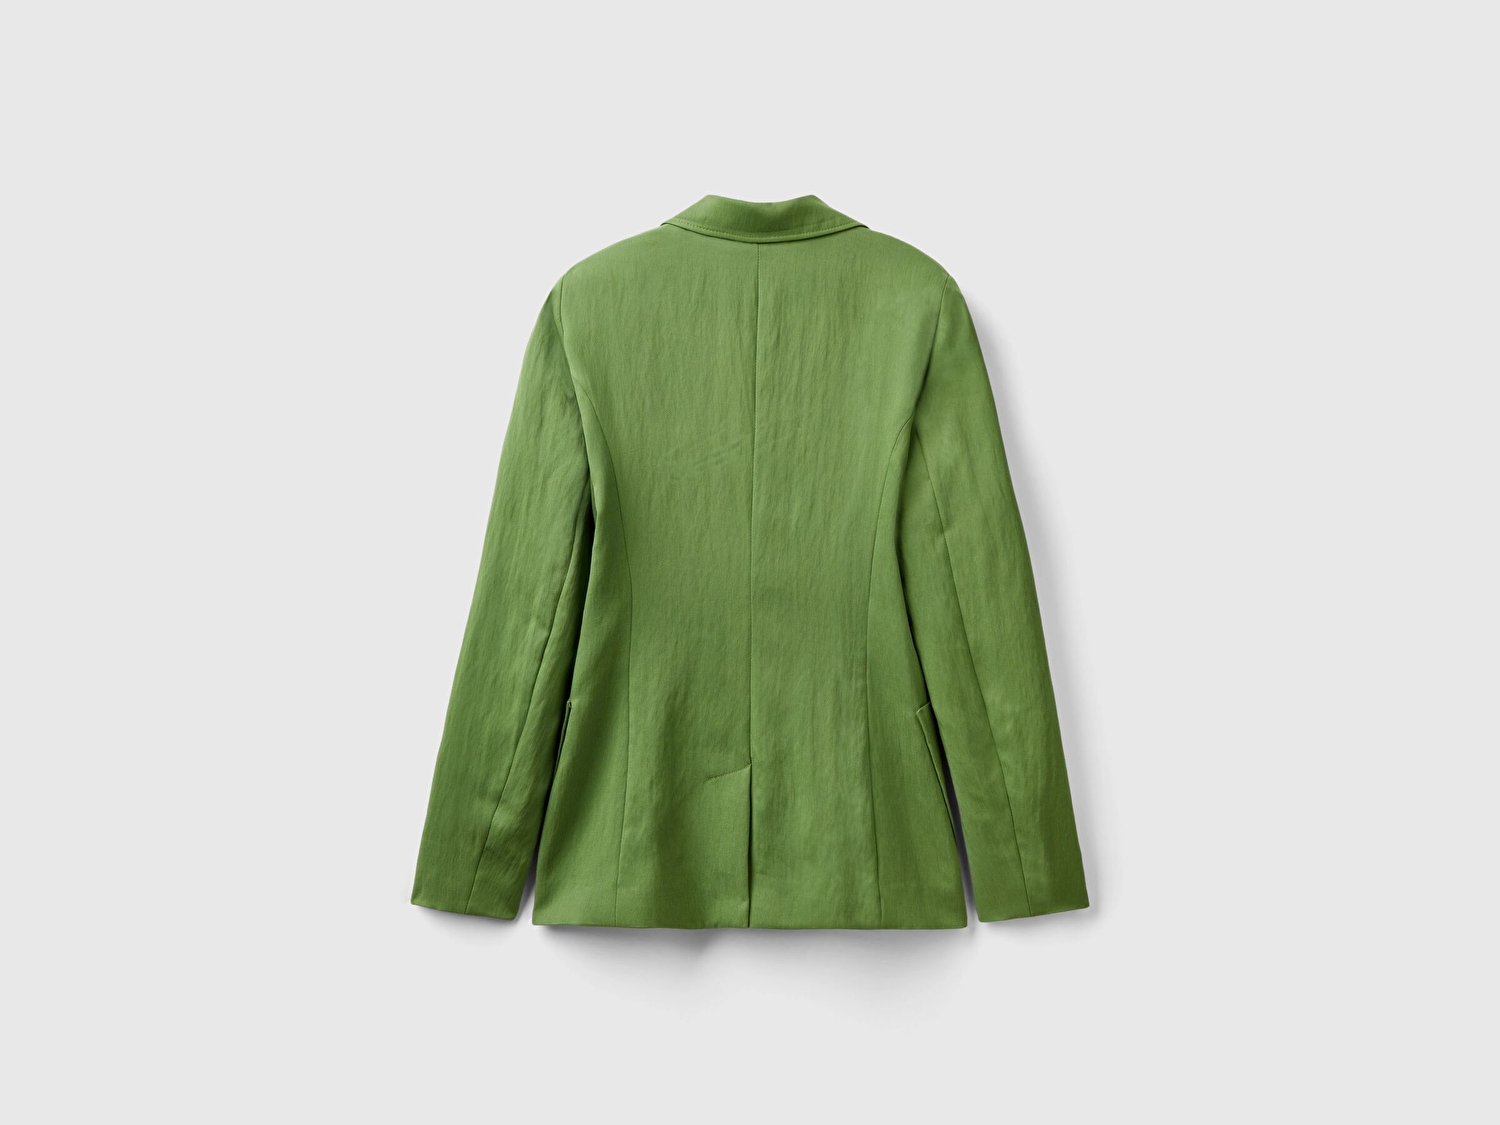 Benetton Kadın Soluk Yeşil Liyosel ve Viskoz Karışımlı Yama Cepli Kruvaze Blazer Ceket